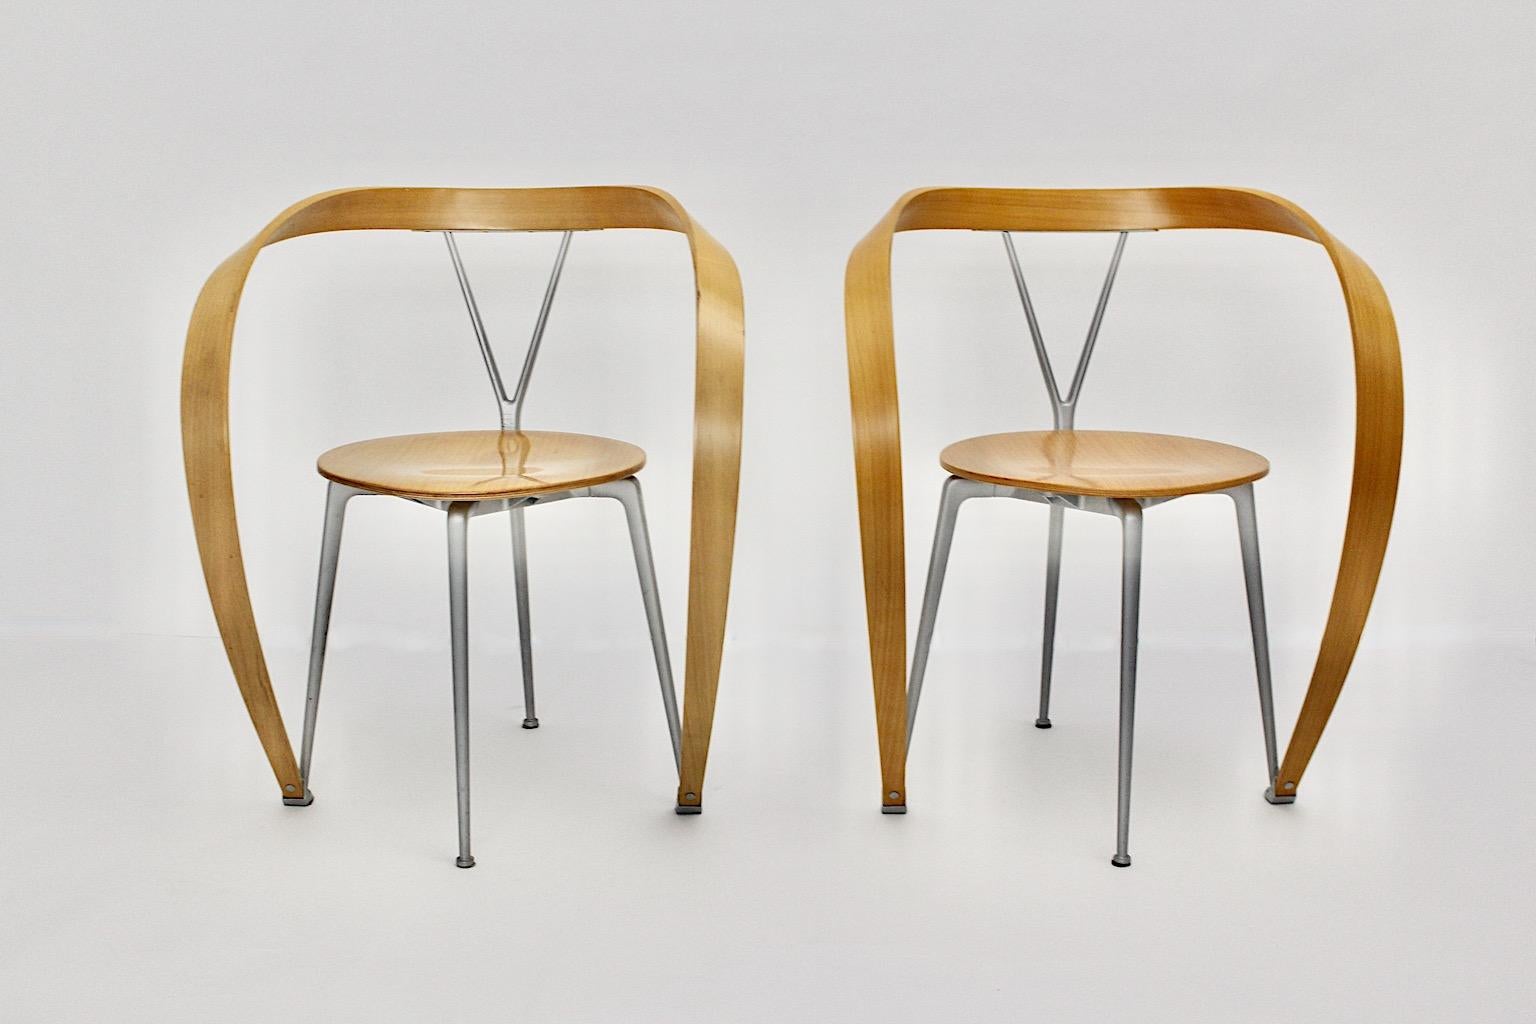 Paire de fauteuils vintage moderniste modèle Revers, qui a été conçu par Andrea Branzi pour Cassina, Italie 1993.
Andrea Branzi (1938) Architecte et designer italien.
Après avoir obtenu son diplôme en 1966, il a fondé Archizoom Associati avec